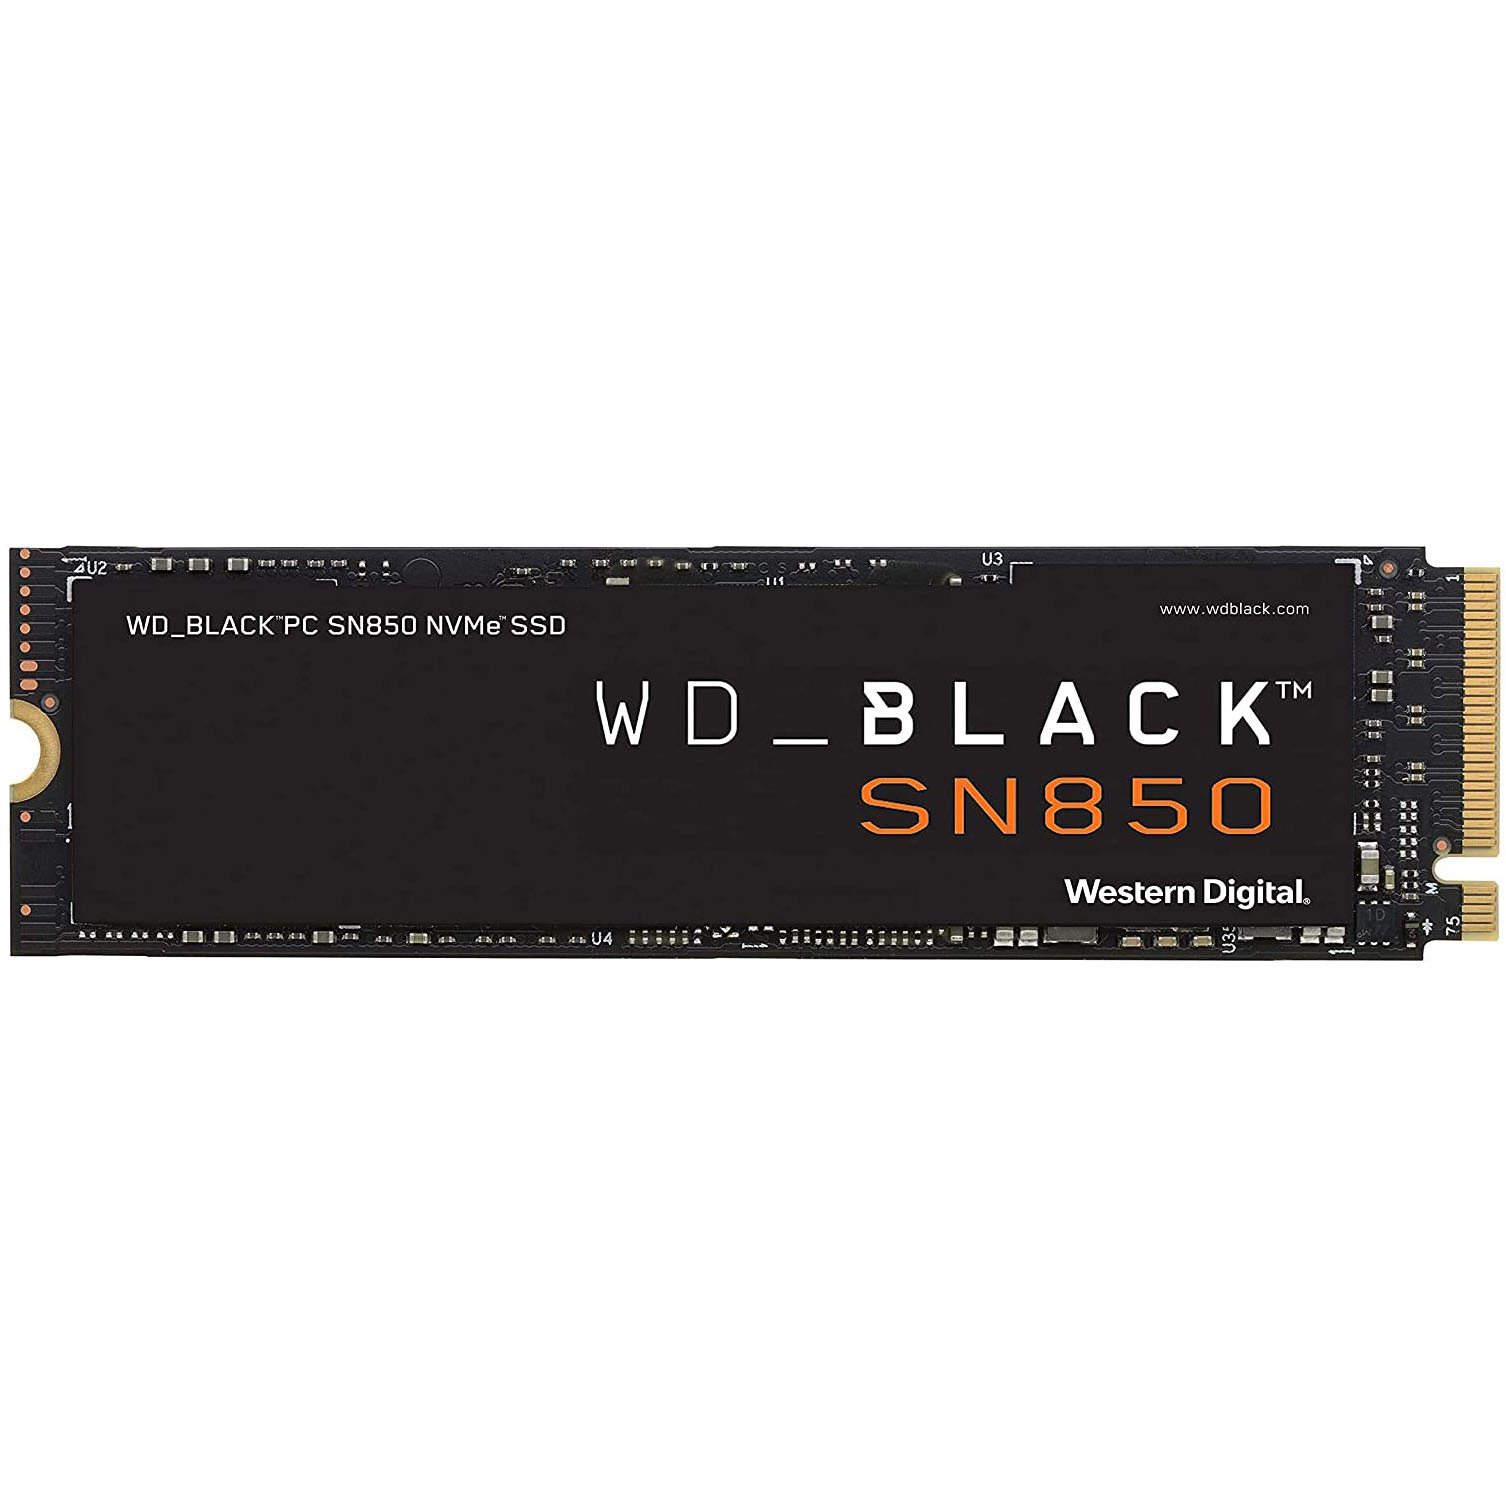 ssd m 2 накопитель wd black sn850 1000 гб [wds100t1x0e] SSD M.2 накопитель WD Black SN850, 1000 ГБ [WDS100T1X0E]